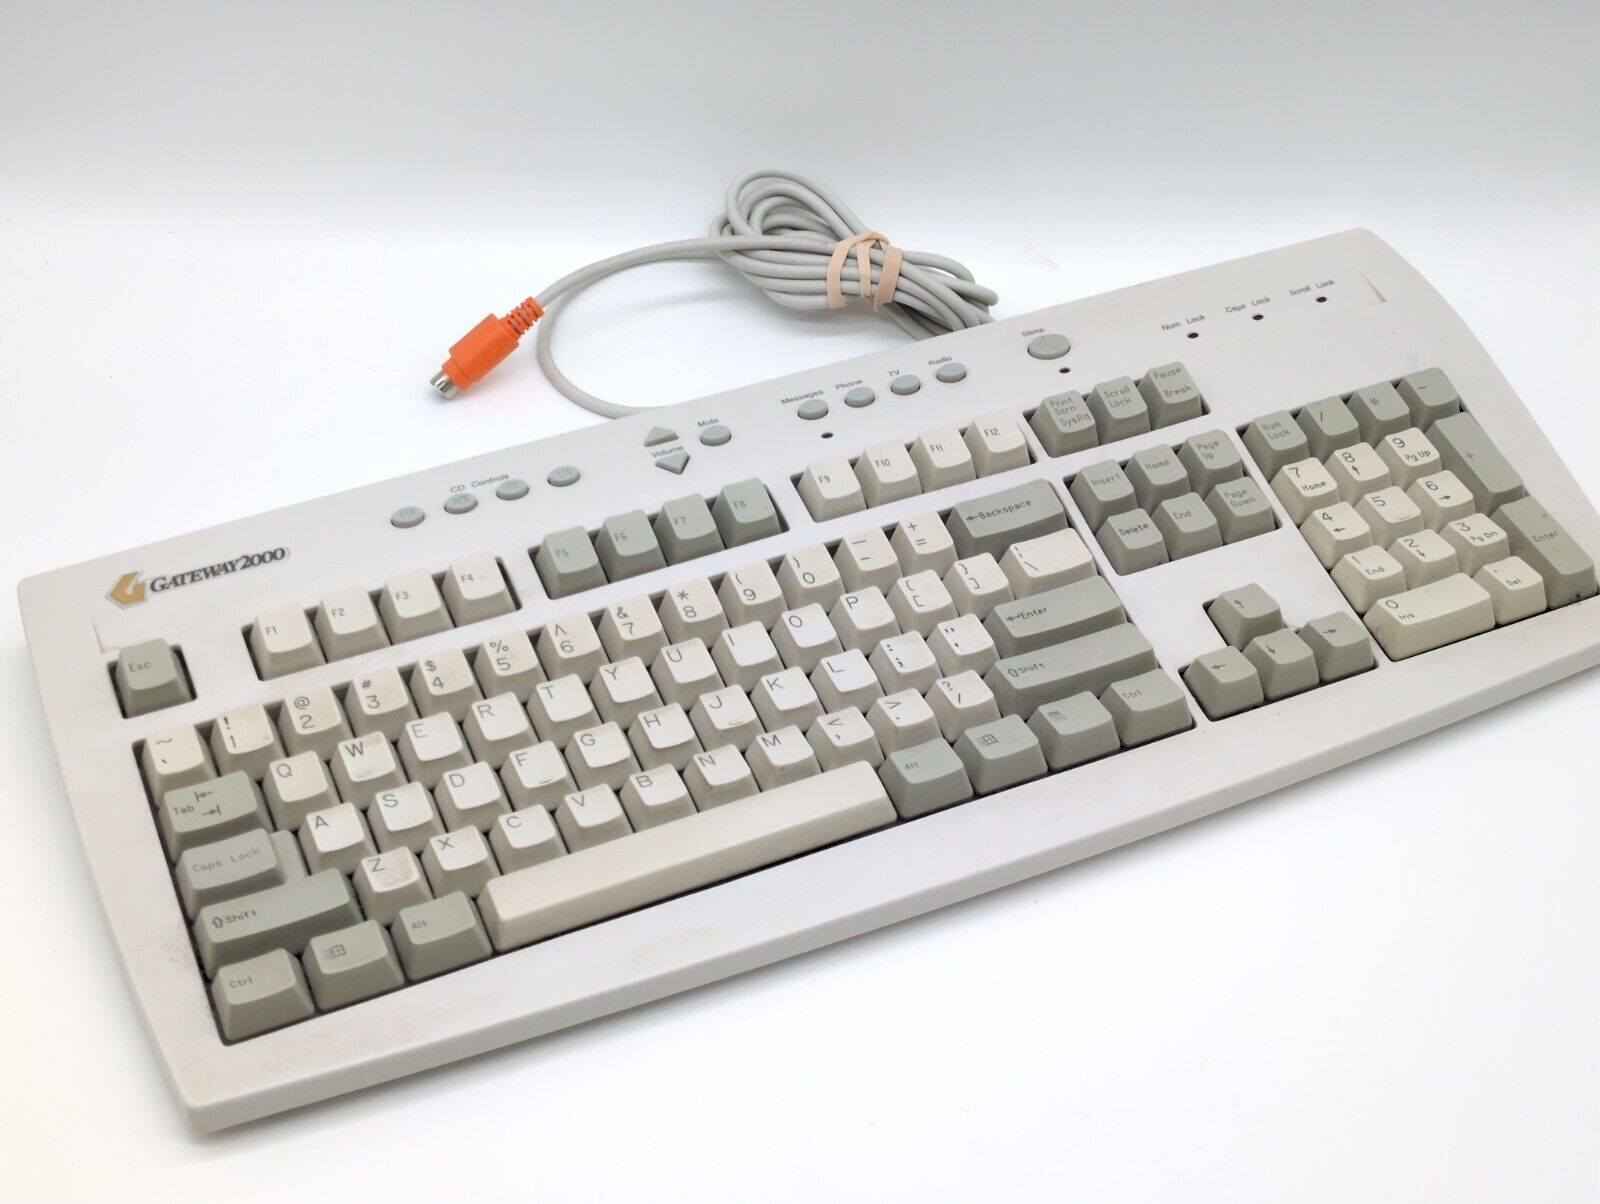 Gateway 2000 Model 700598 Vintage PS2 Keyboard White